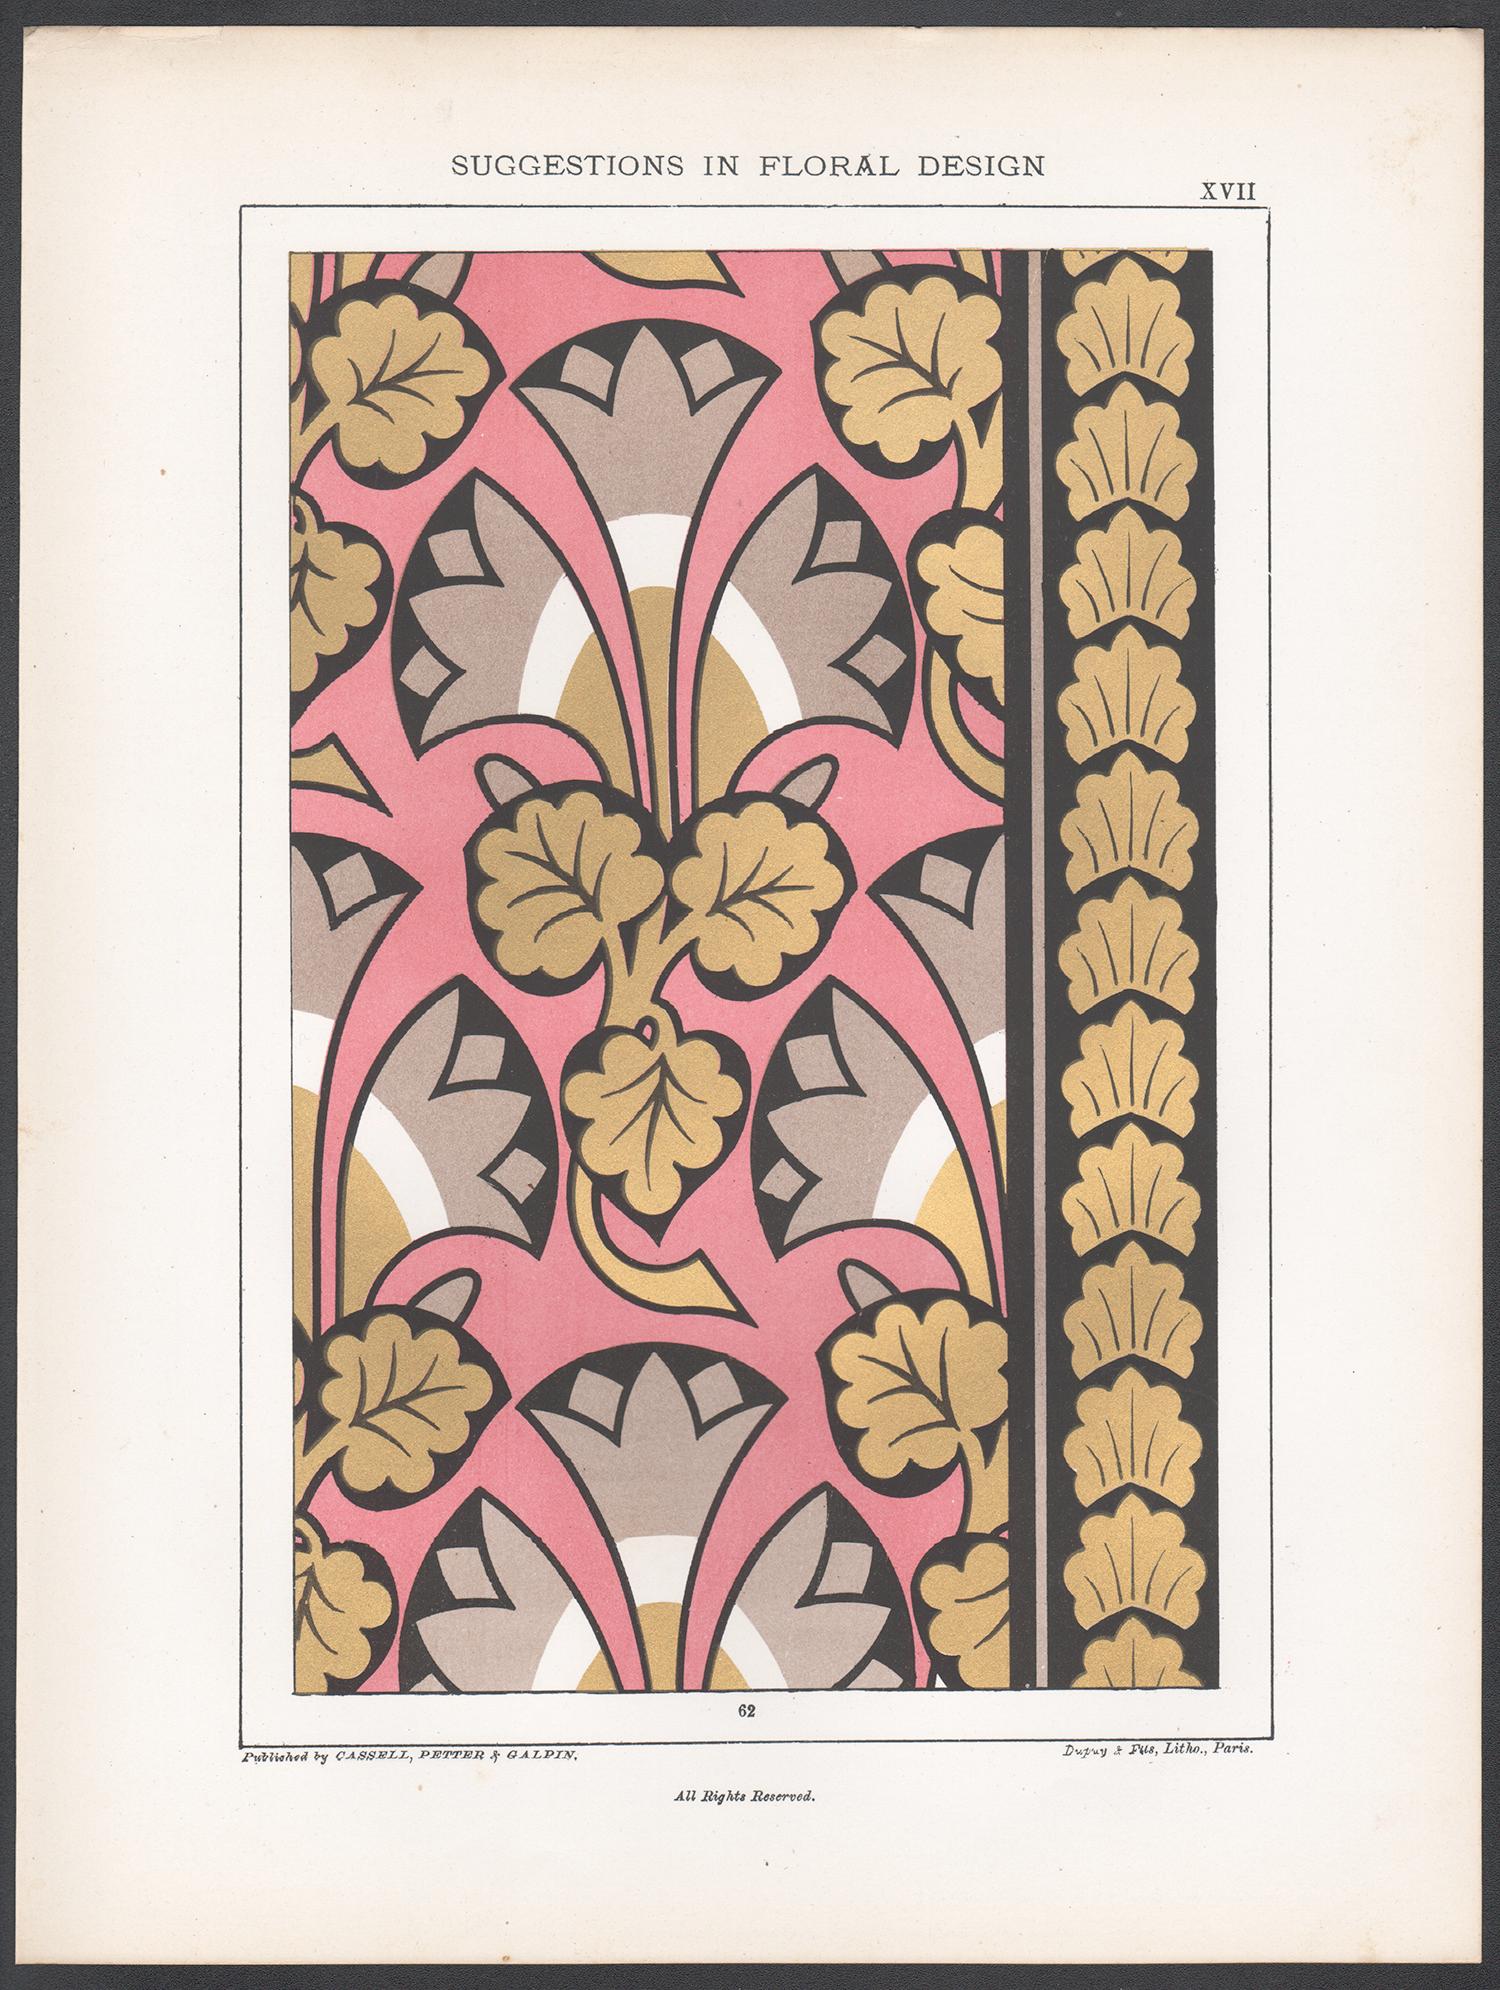 Suggestions en matière d'am designs, Frederick Hulme, chromolithographie du 19e siècle - Print de Frederick William Hulme